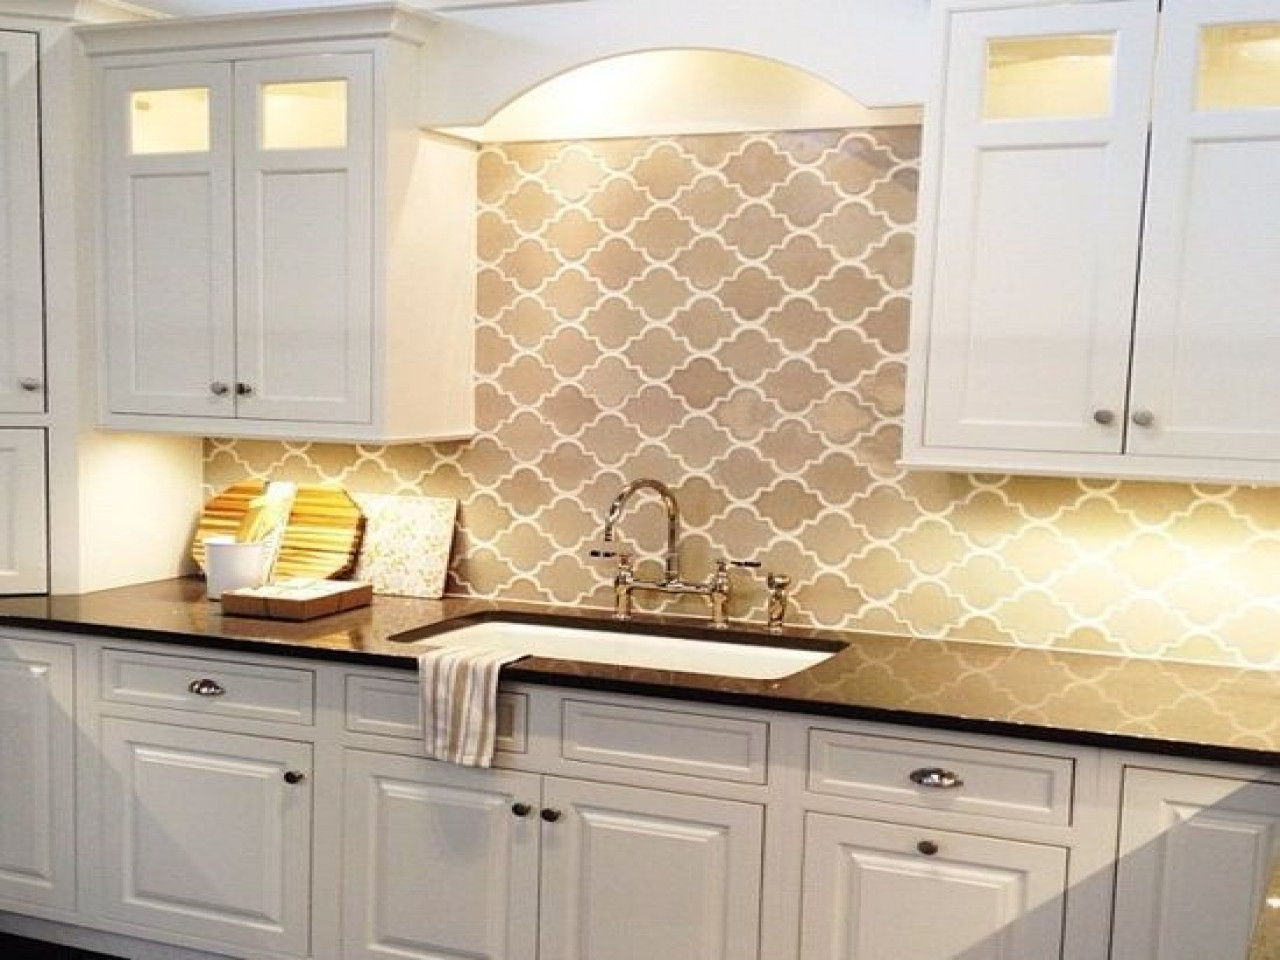 Arabesque Tile Kitchen Backsplash
 Gray White Kitchen With Arabesque Backsplash Tile Ideas